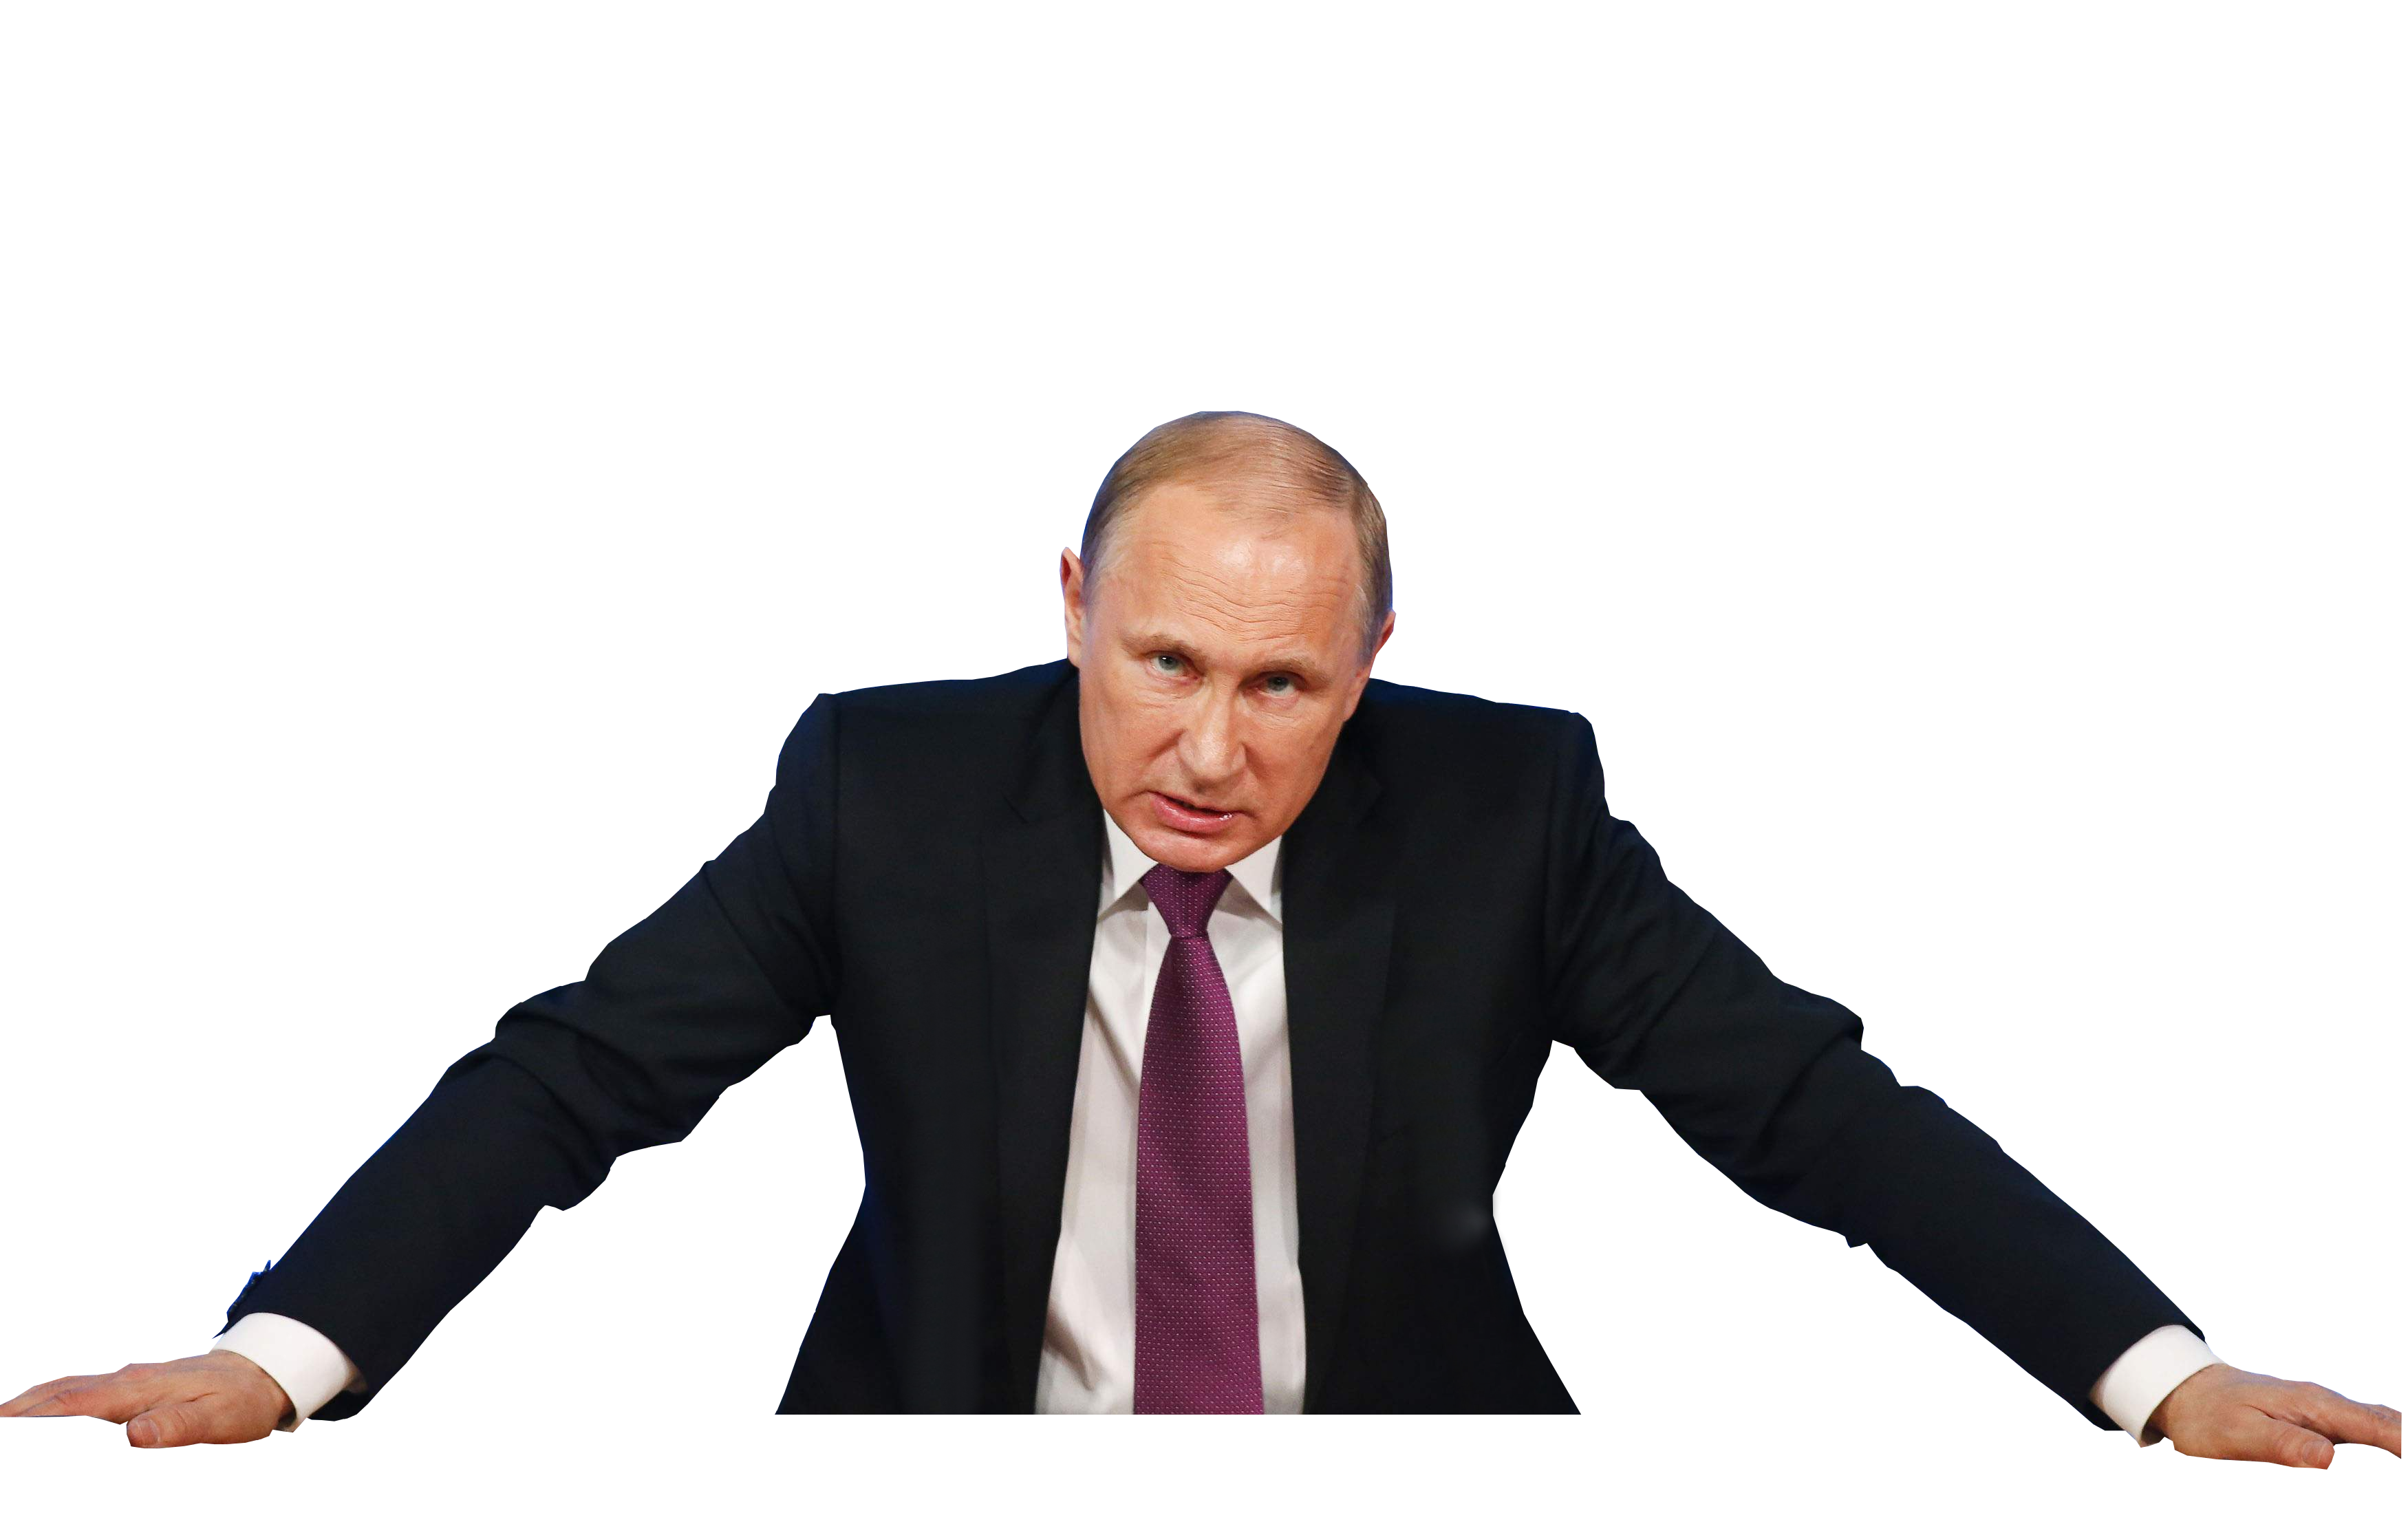 Vladimir Putin PNG Image.